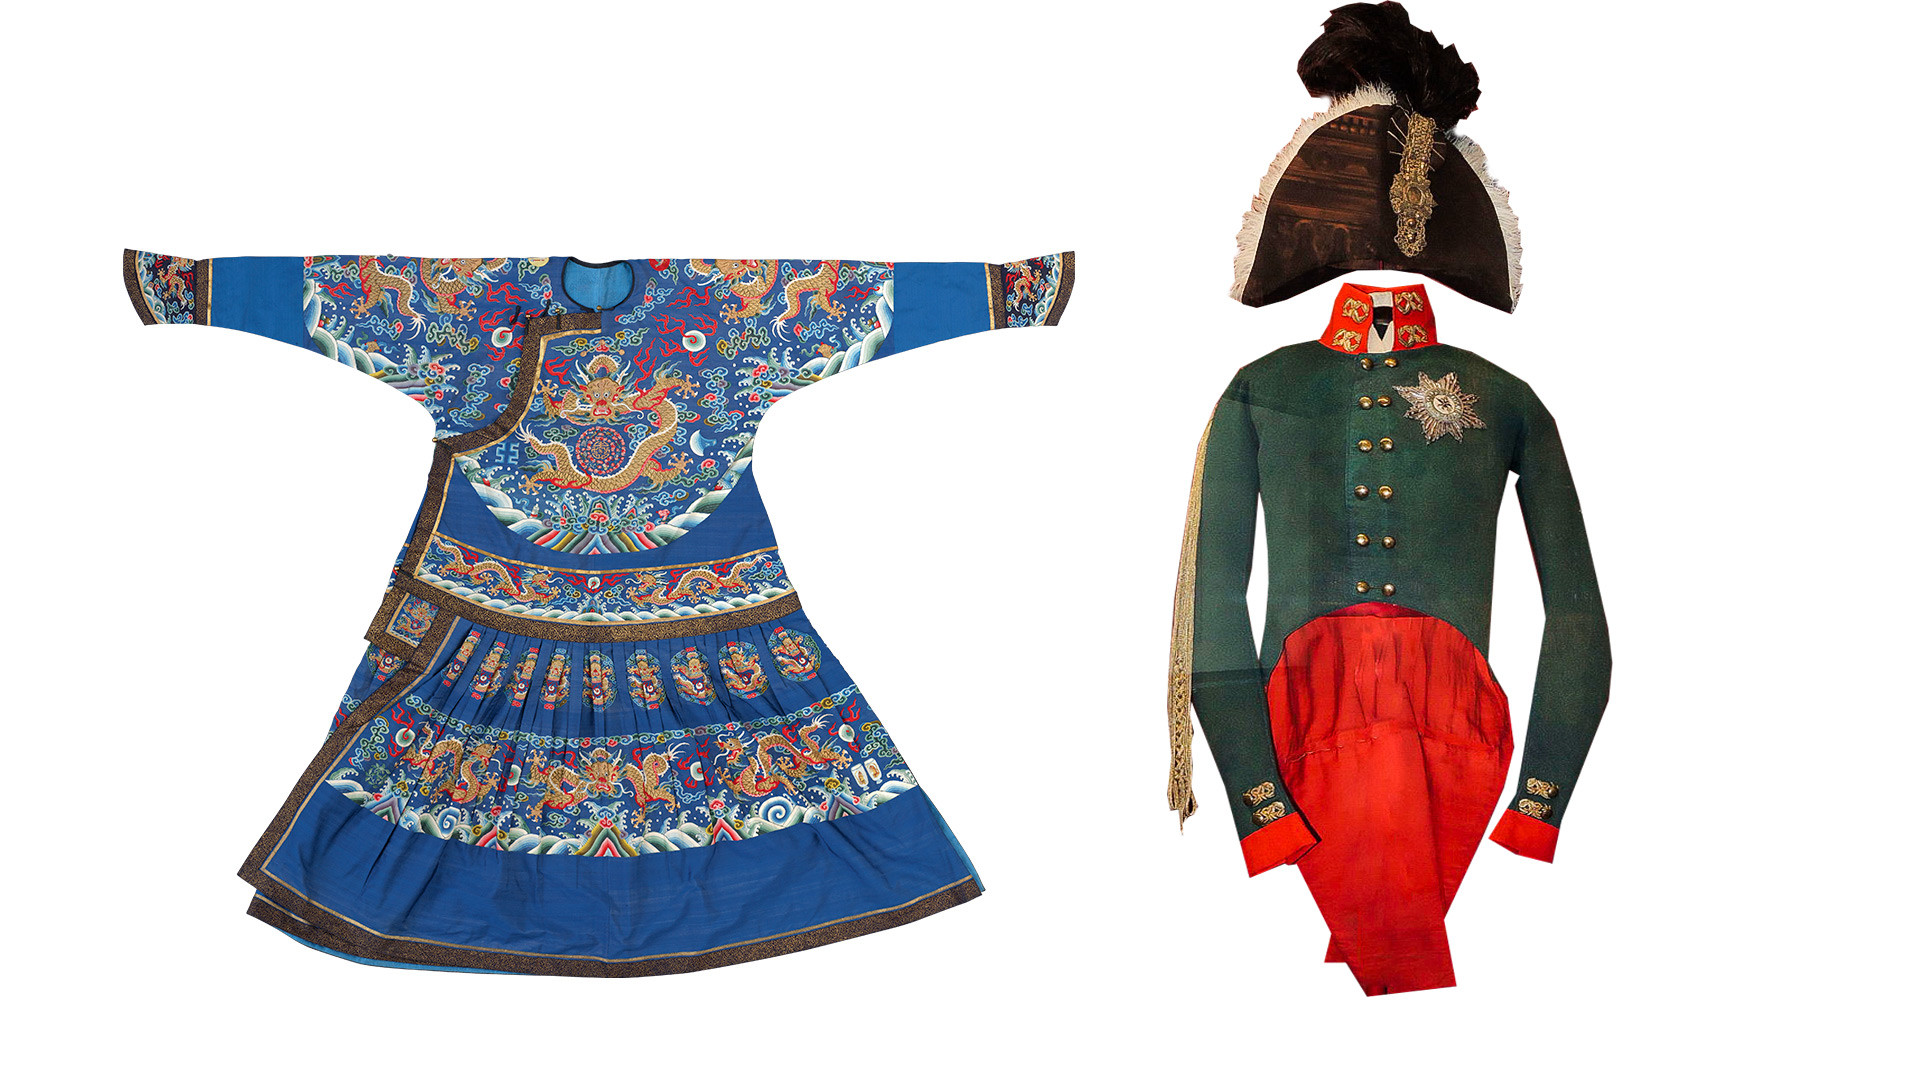 Лево: Свечана одећа цара. Династија Ћинг, владавина Ђијаћинга (1796.–1821.) Десно: Одећа са крунисања цара Александра Првог